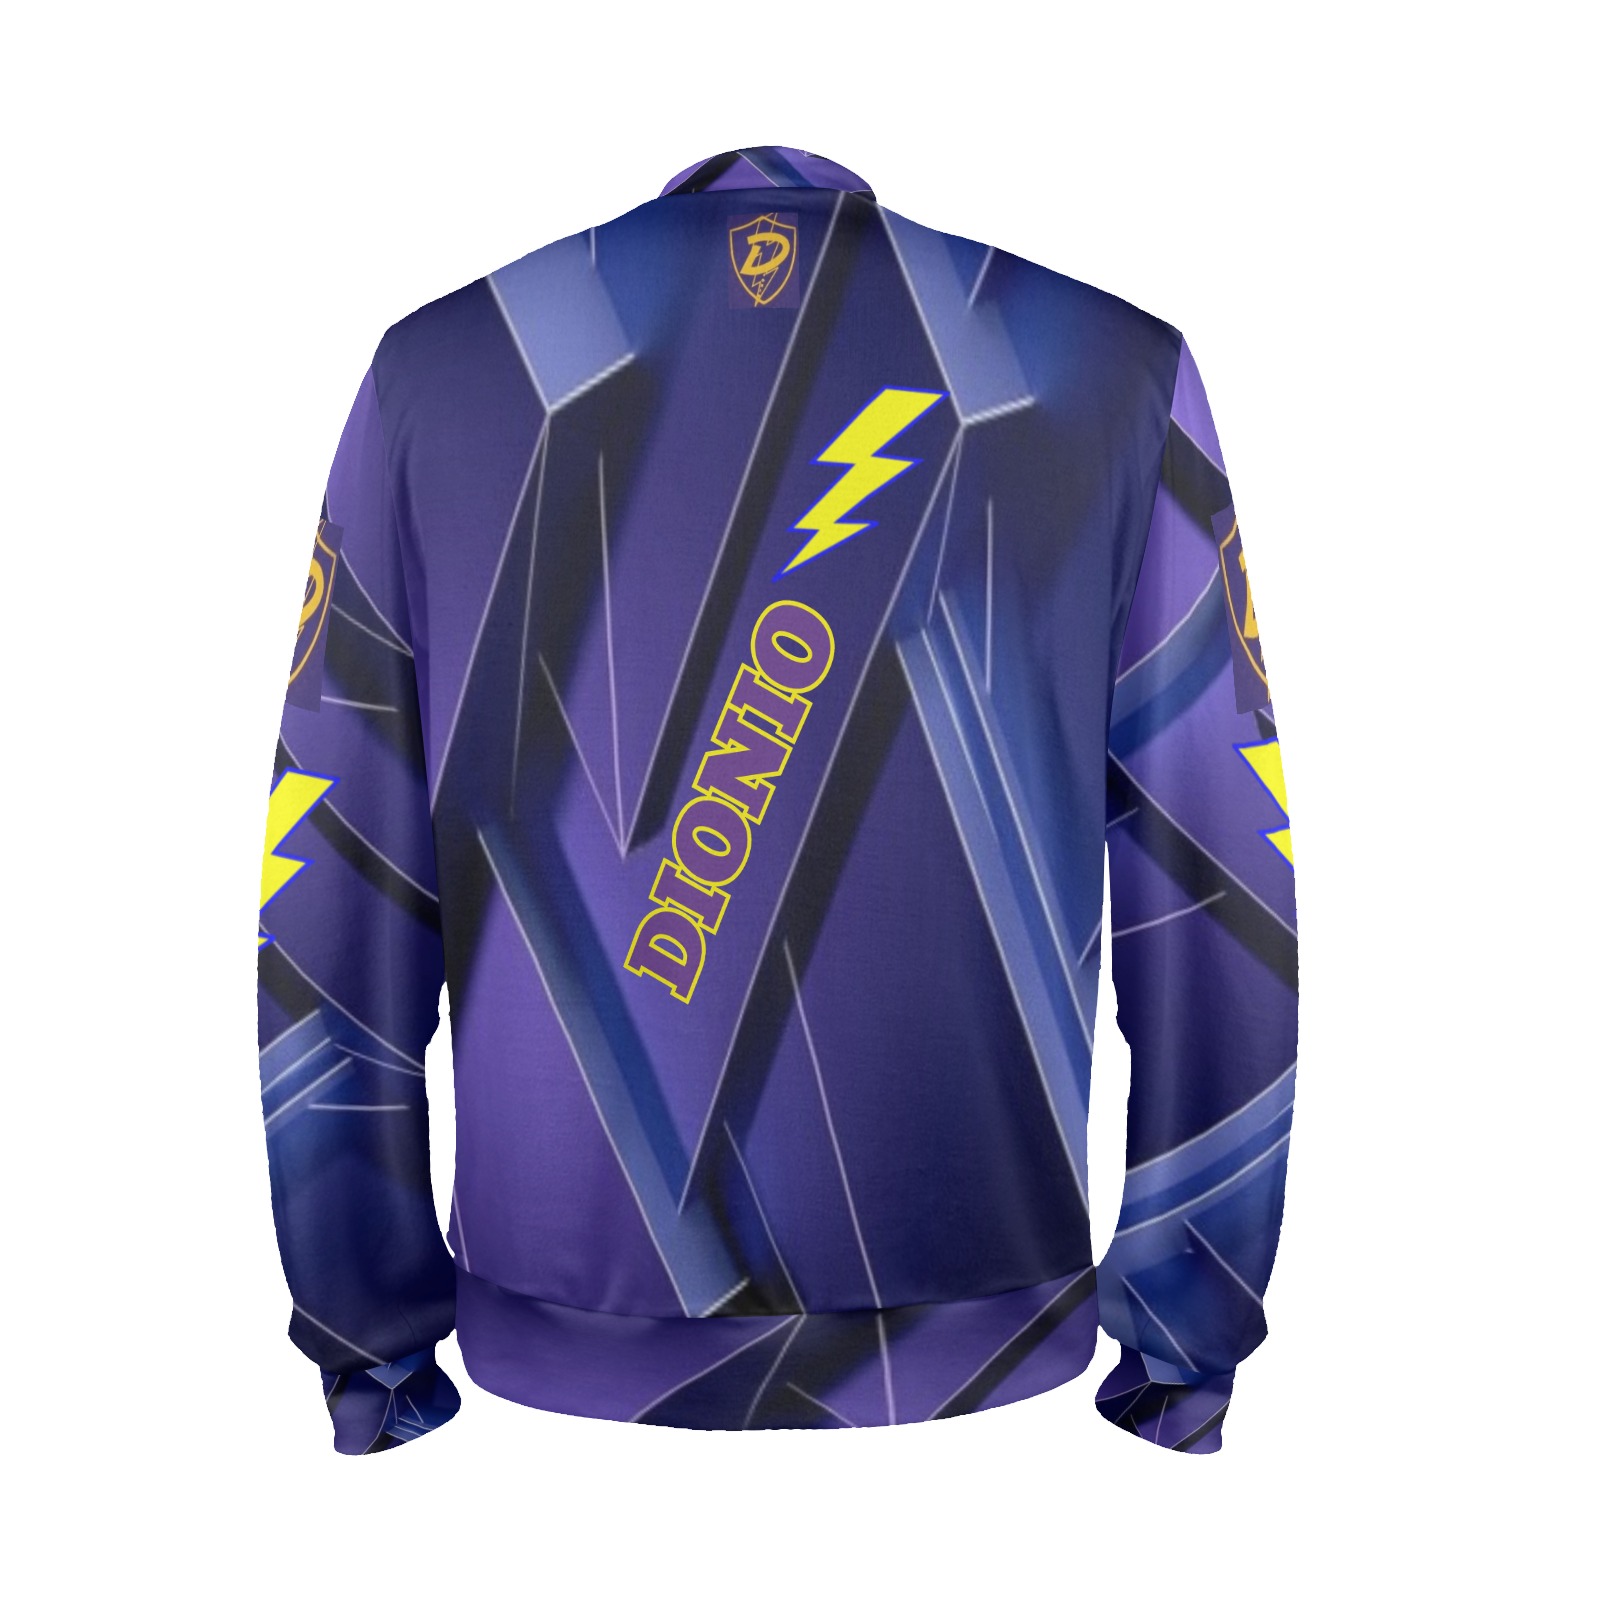 DIONIO - GALVADON 2 Sweatshirt (Purple) Men's All Over Print Mock Neck Sweatshirt (Model H43)